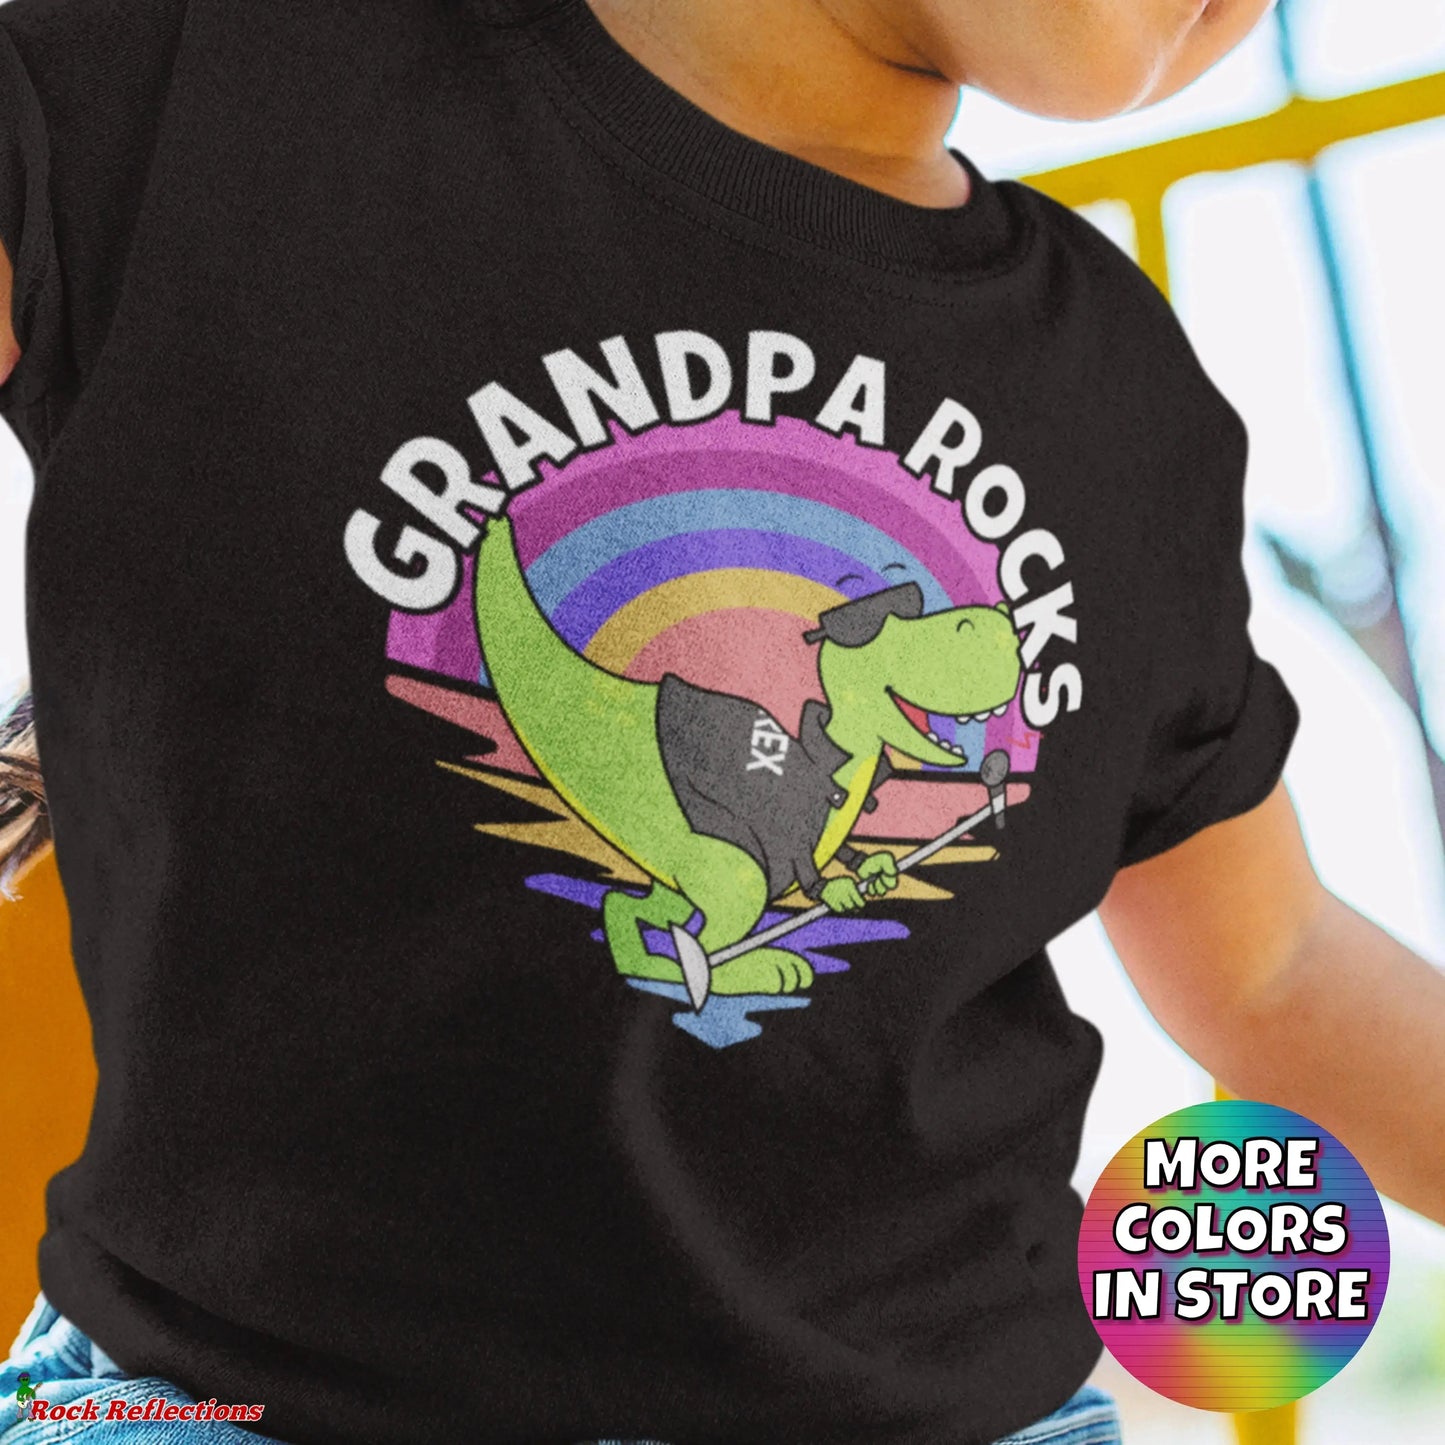 Grandpa Rocks T-Rex SPOD